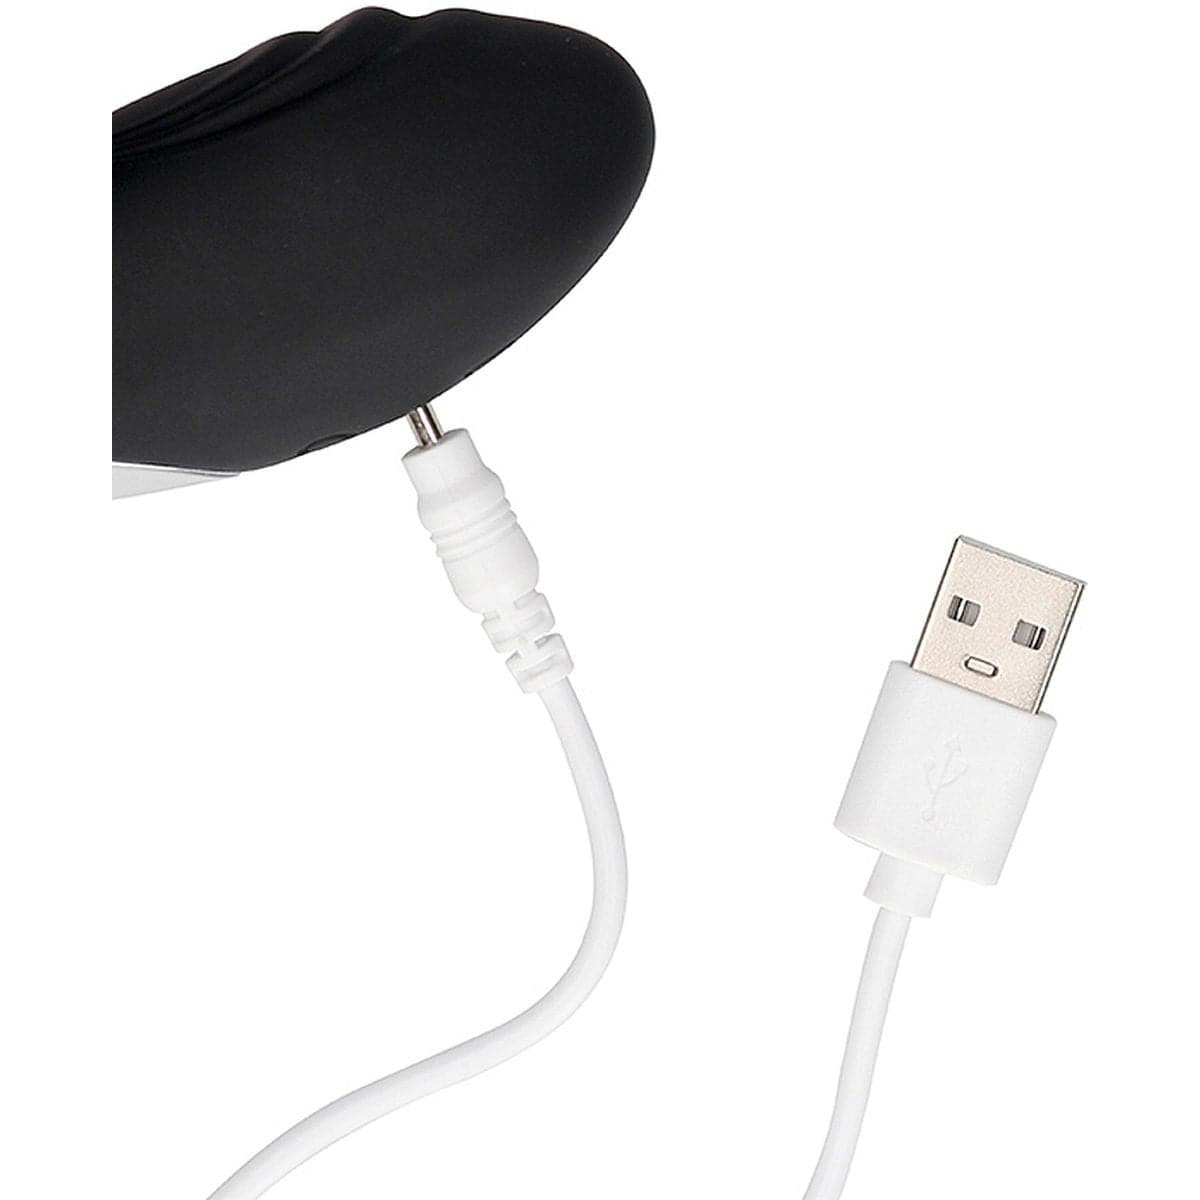 Estimulador Bent Preto USB com Controlo Remoto, 10vibrações